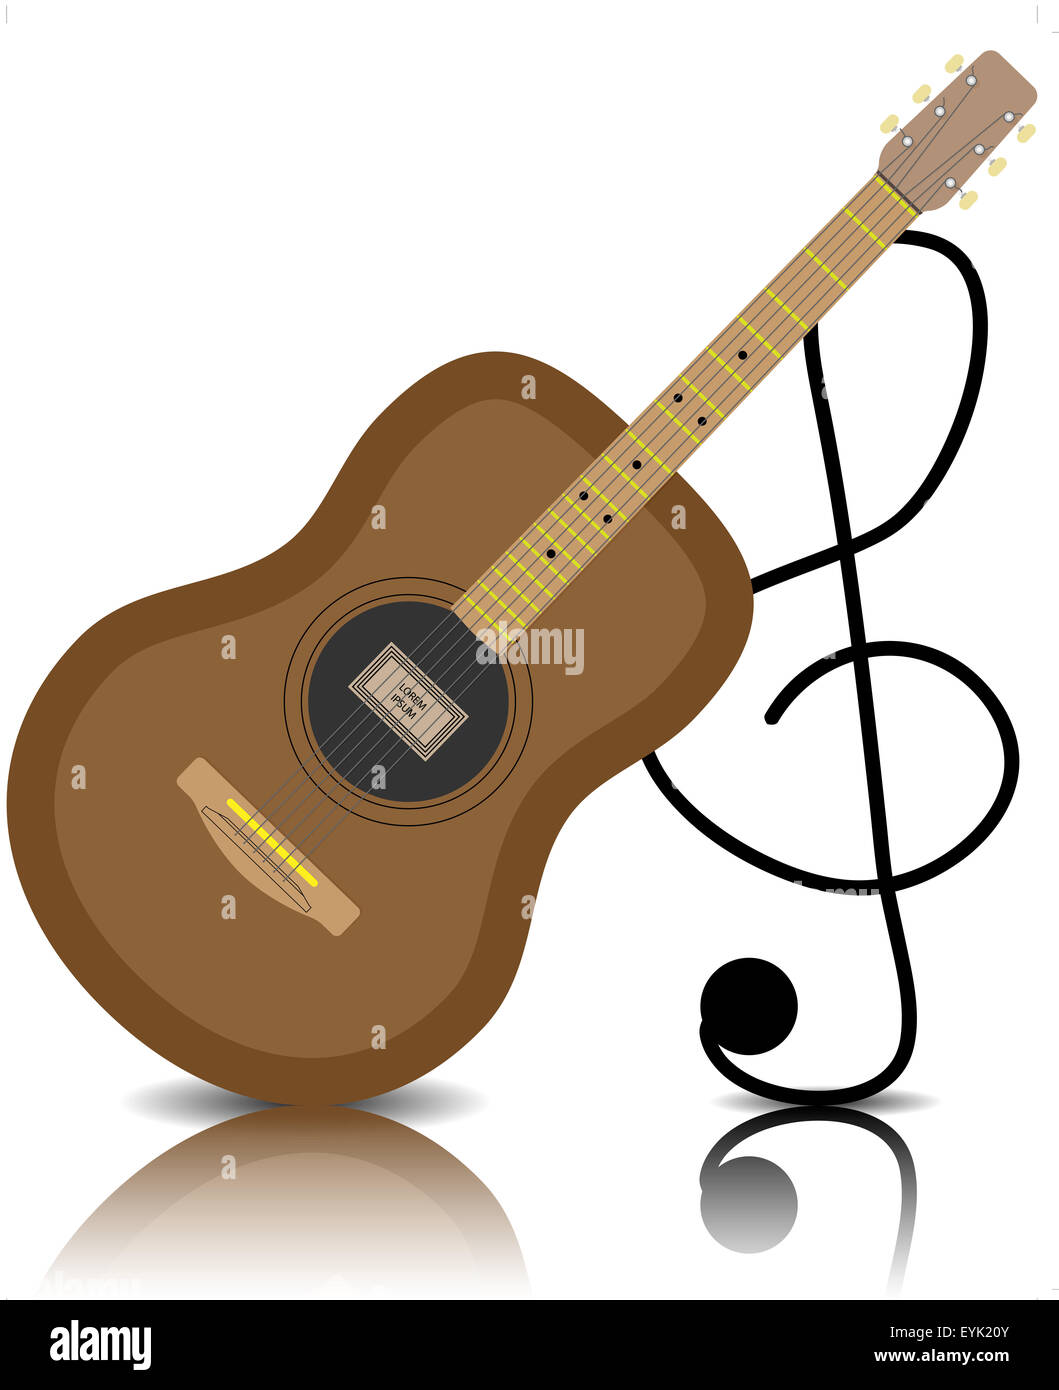 Akustische Gitarre mit einem Violinschlüssel. Musikinstrument, klassischen Sound, String und spielen, Vektor-Grafik-illustration Stockfoto